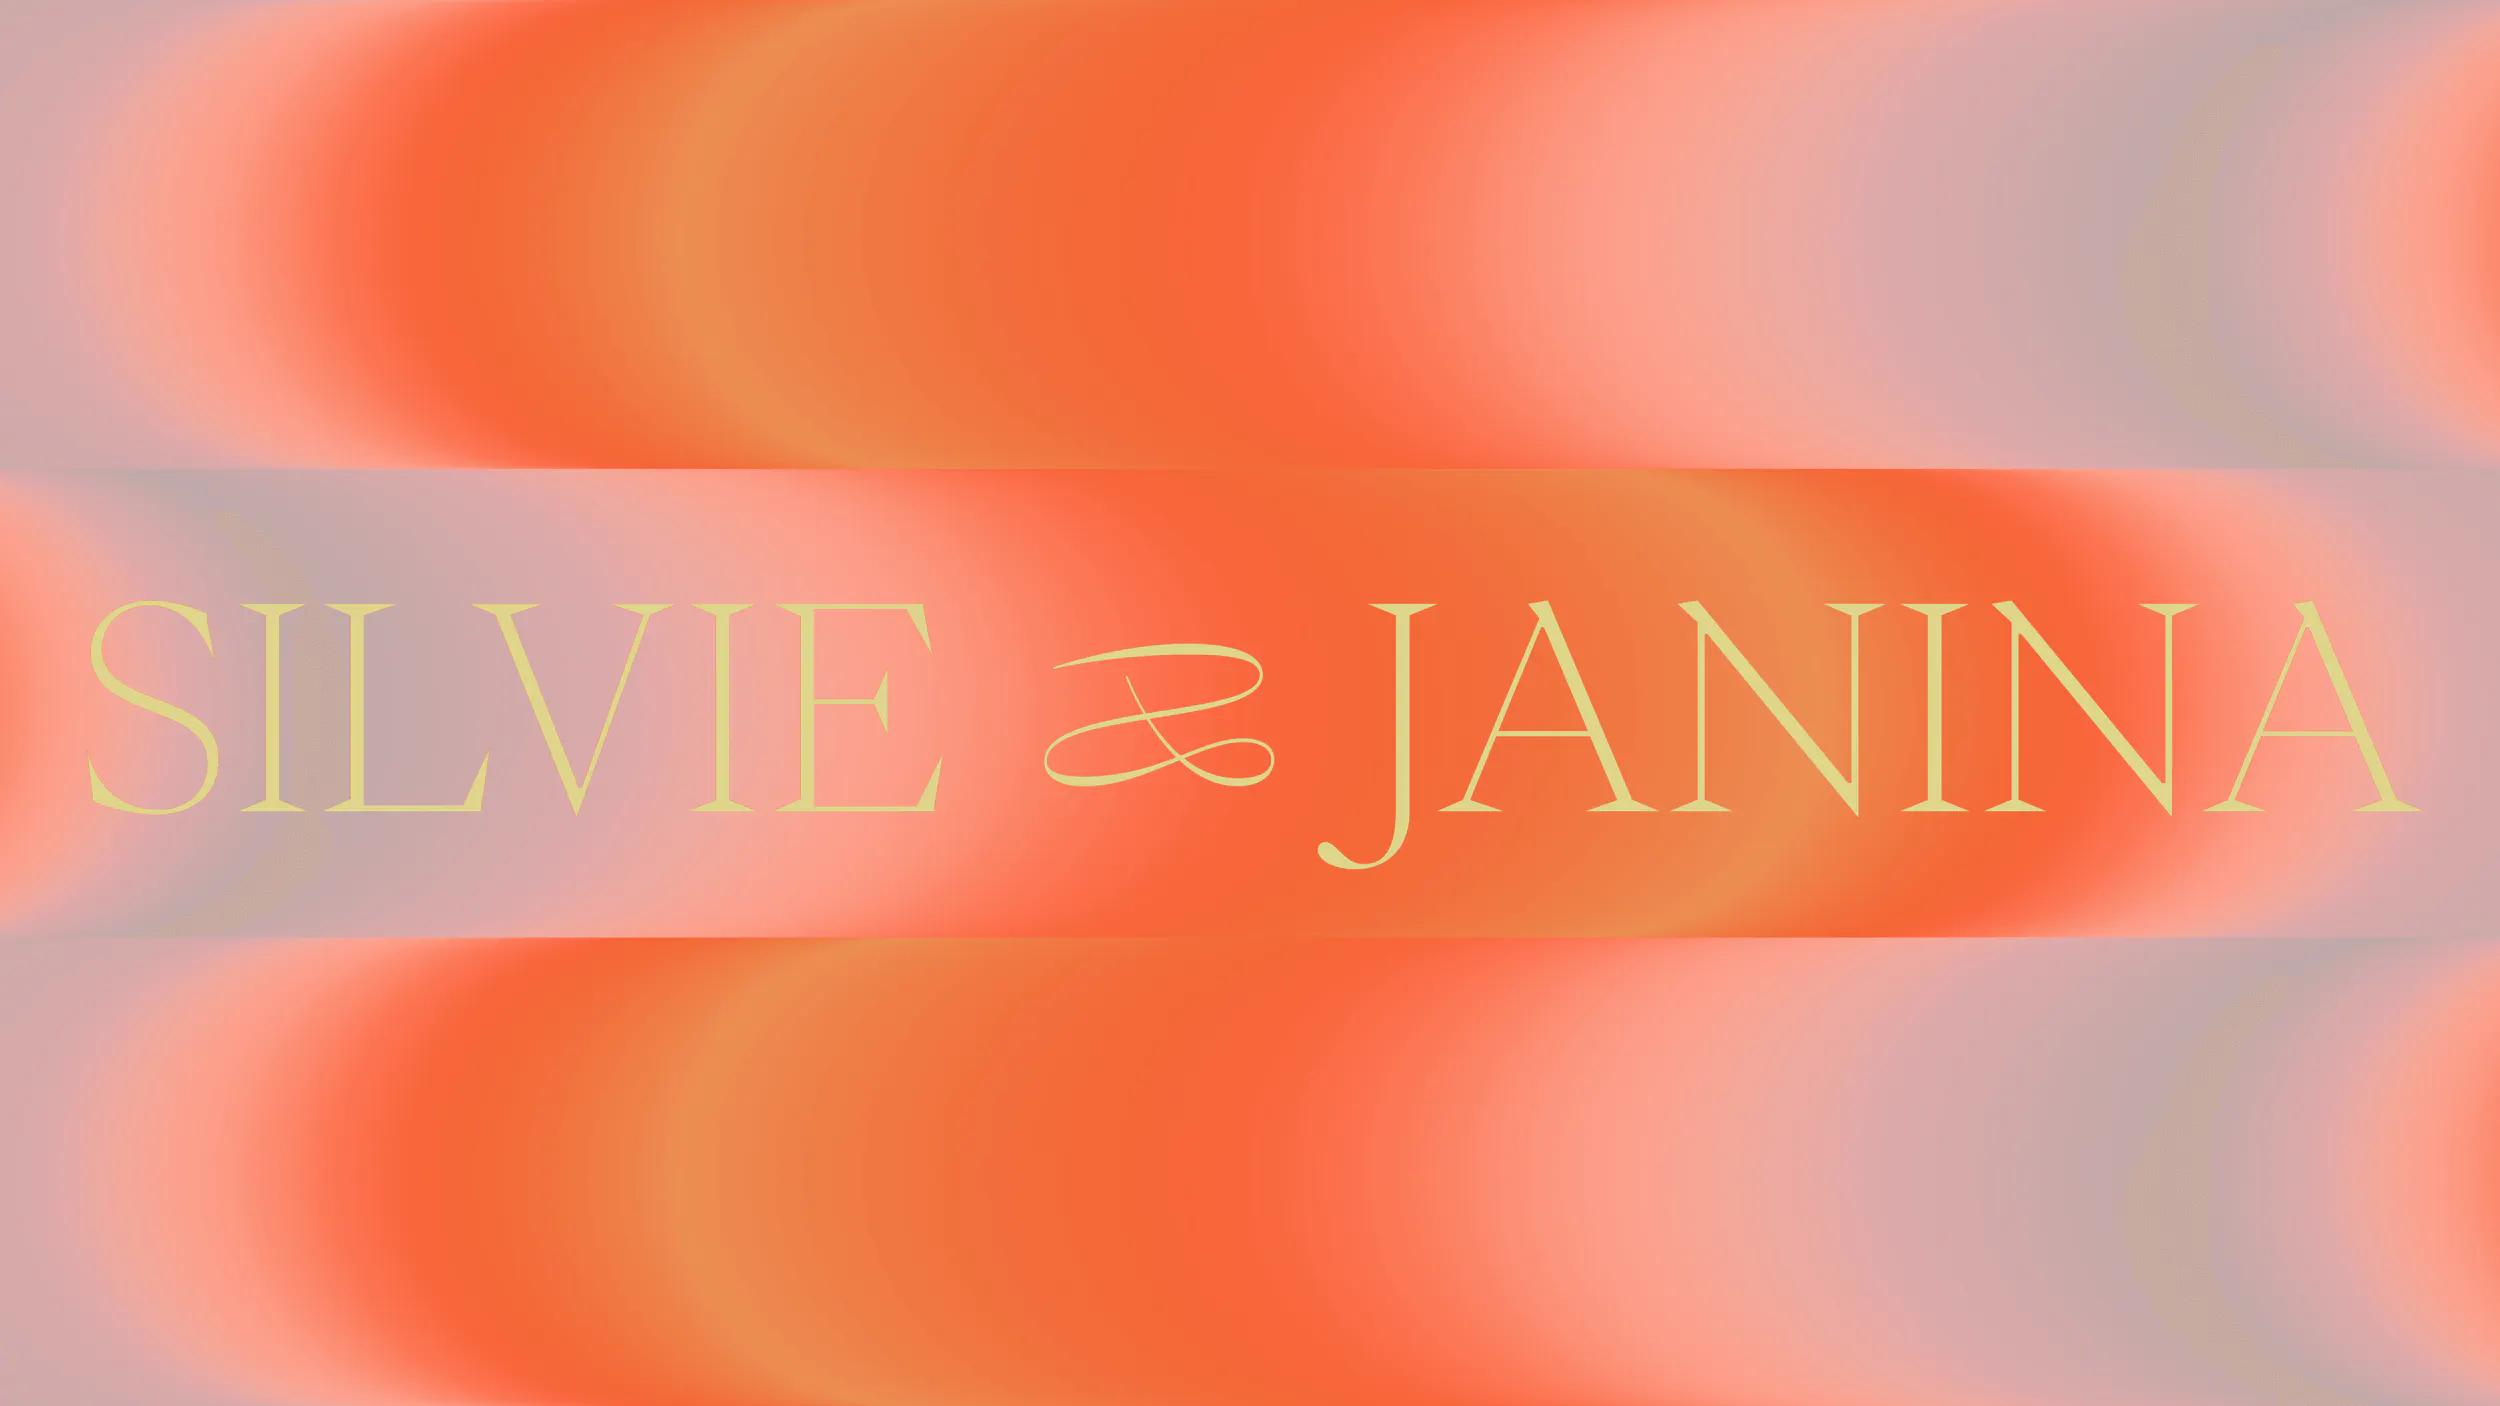 Silvie and Janina swipe through orange screen -New Year, New Wonderlanders